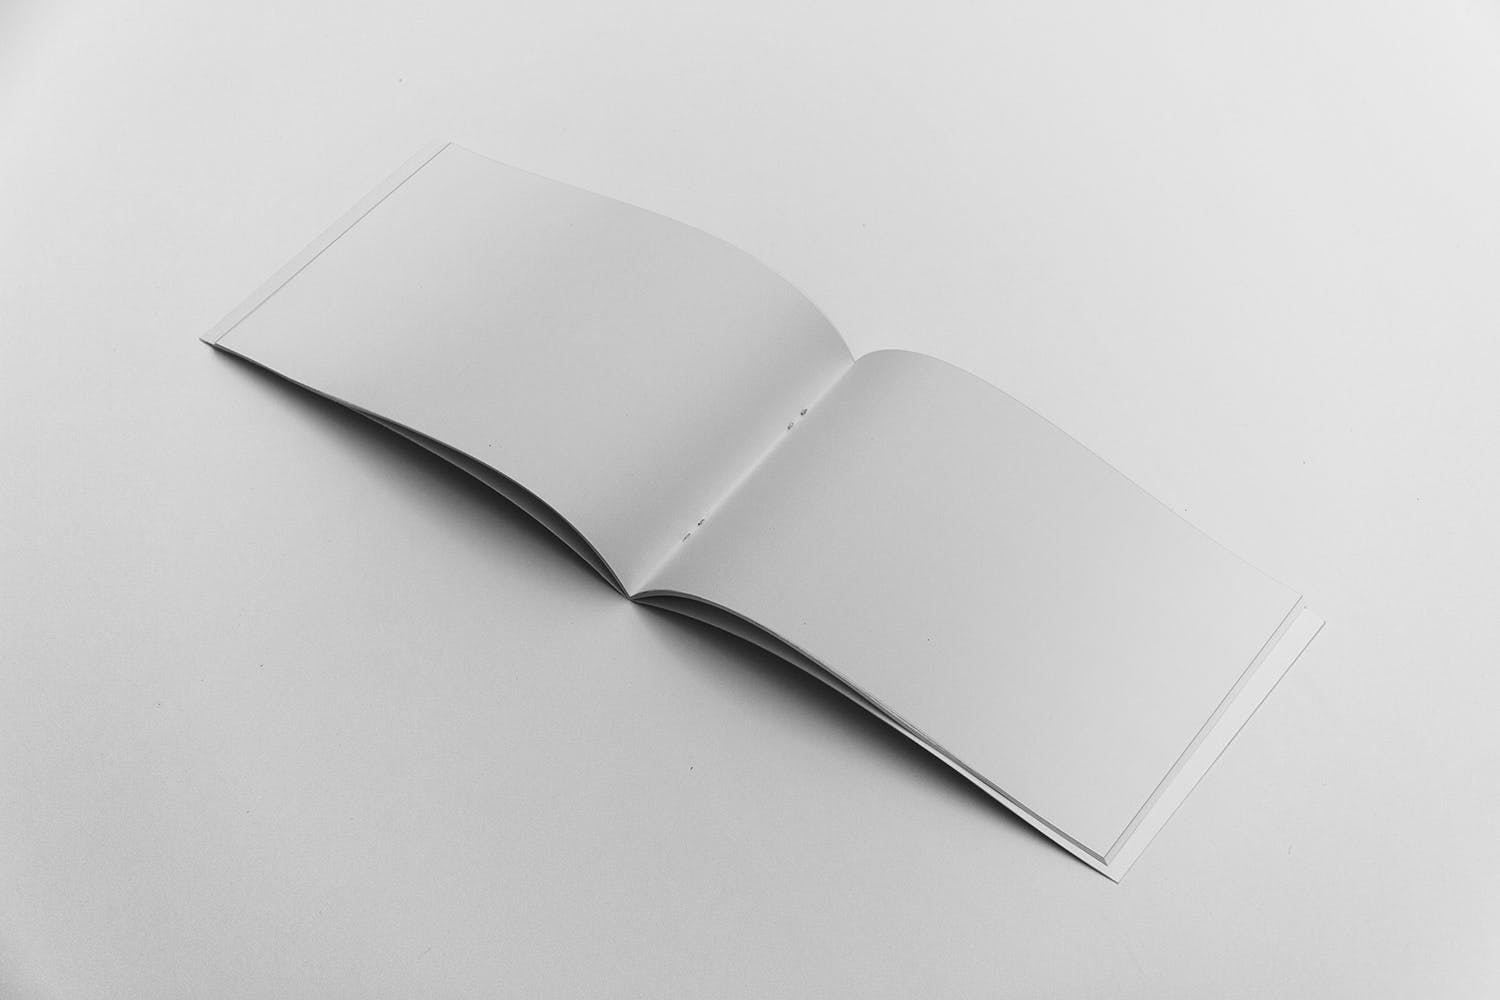 宣传画册/企业画册内页版式设计图样机16设计网精选 Open Landscape Brochure Mockup插图(1)